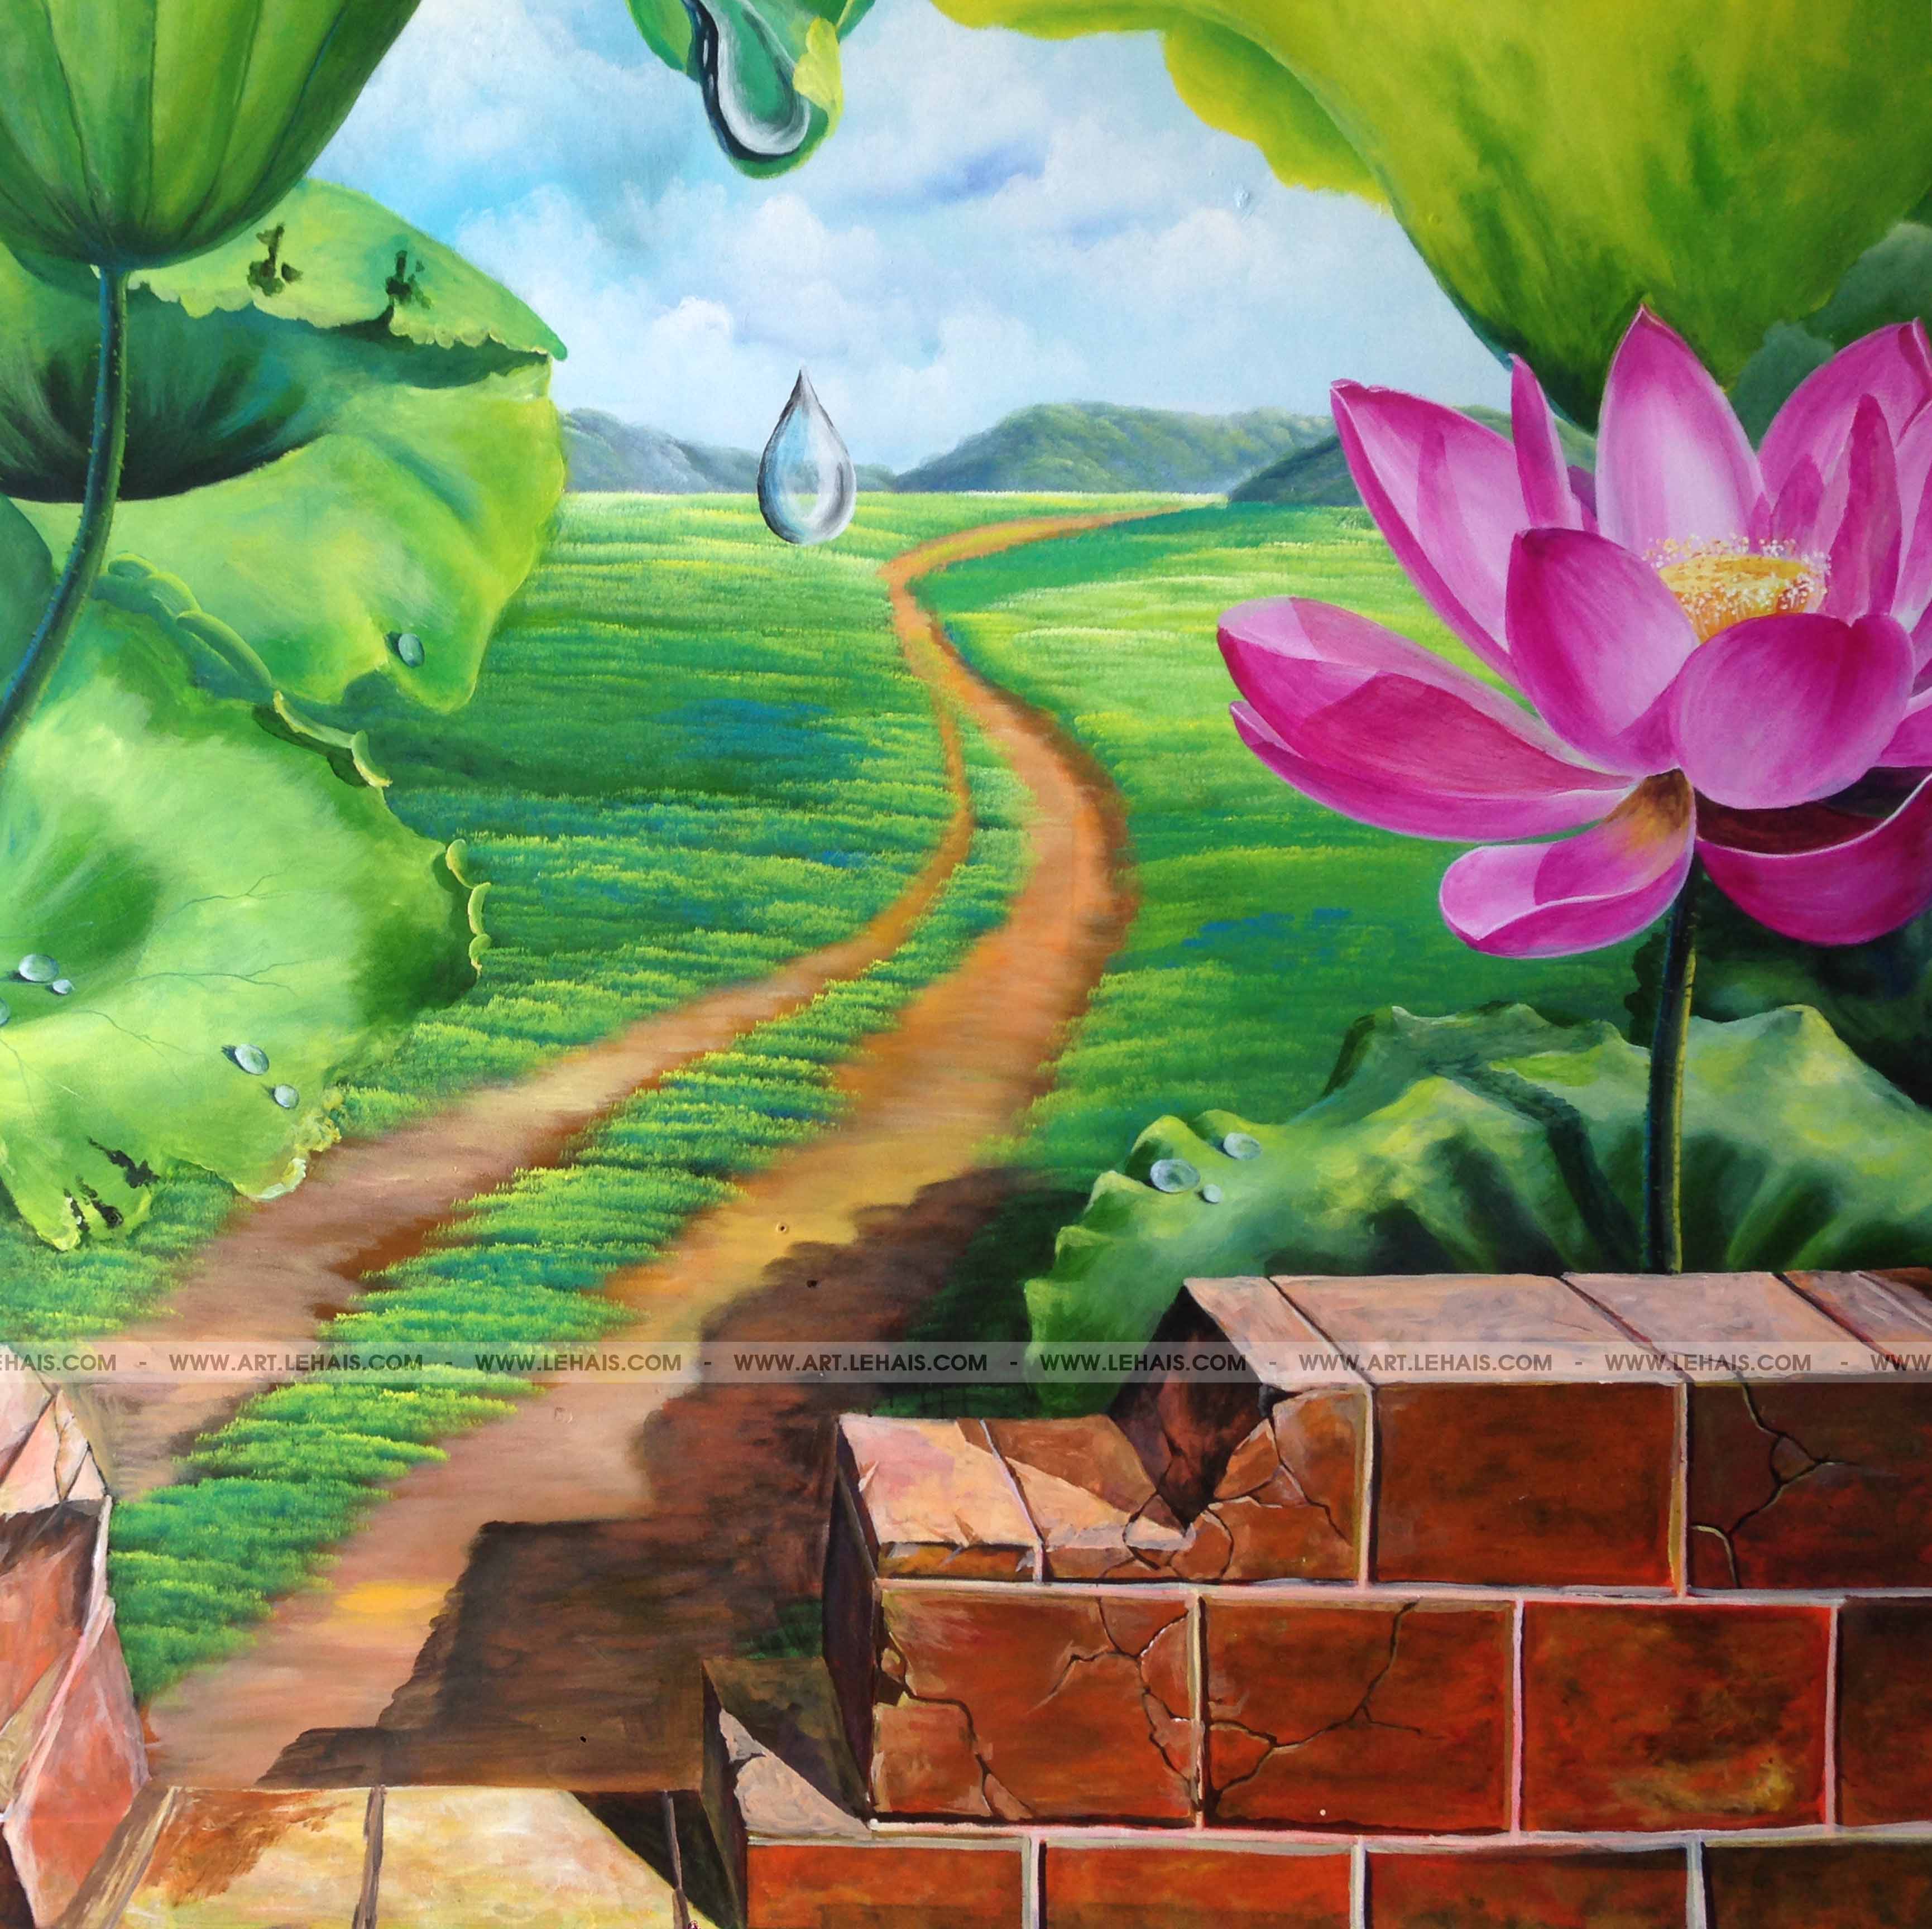 Vẽ tranh tường 3D tại trường CHU VĂN AN, TP Quảng Bình - TT121LHAR